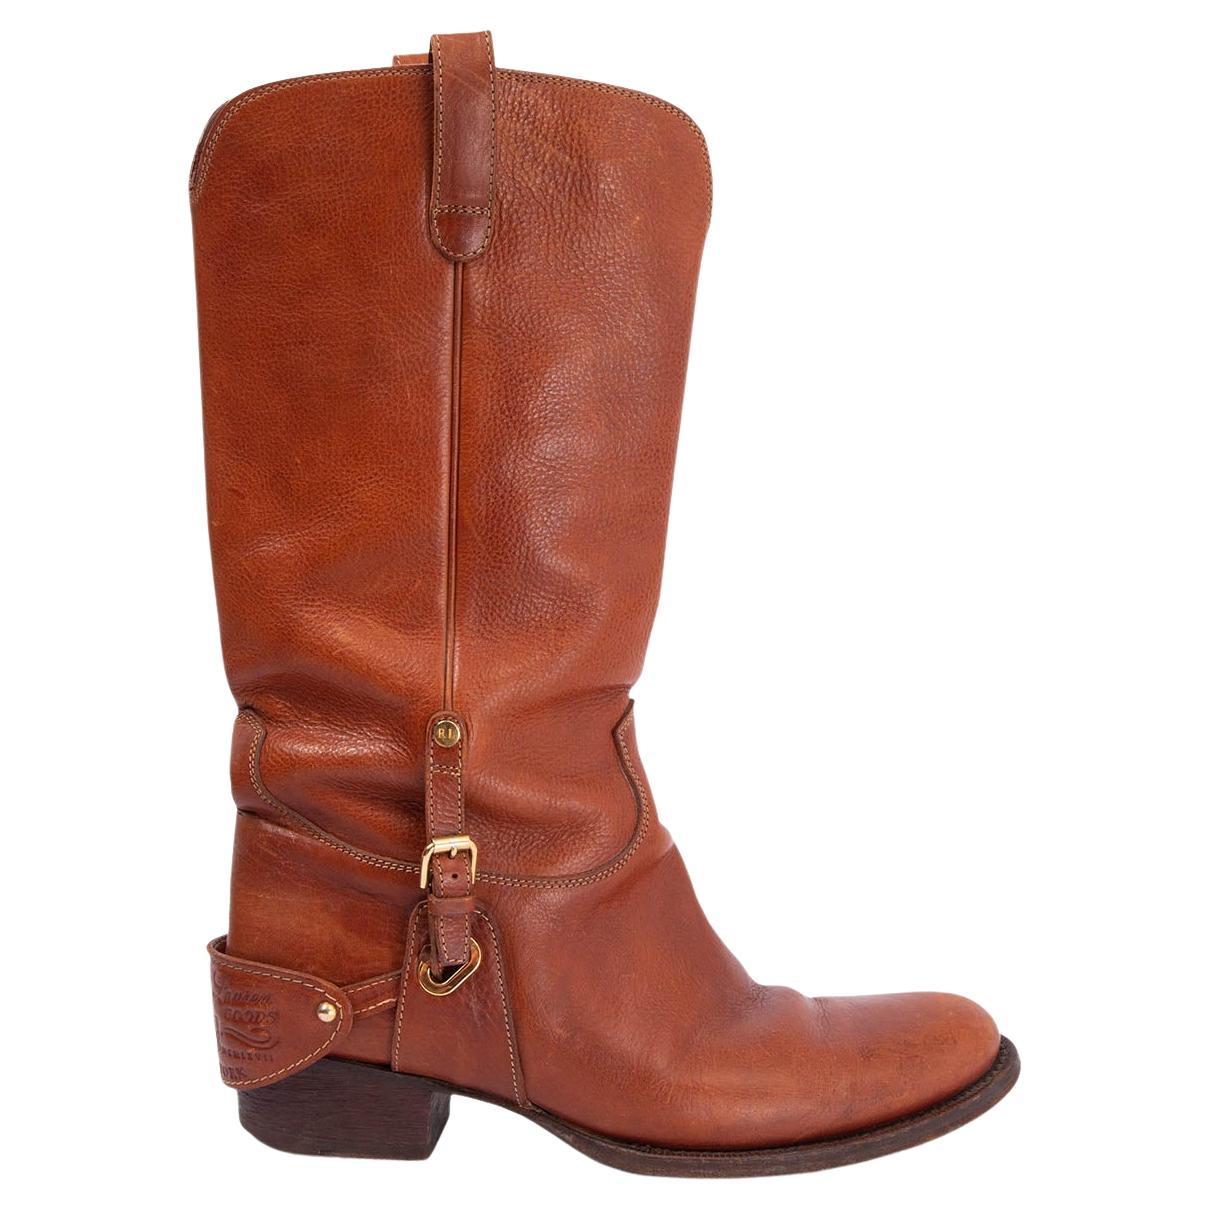 RALPH LAUREN cognac brown leather HARNESS COWBOY Boots Shoes 8 B